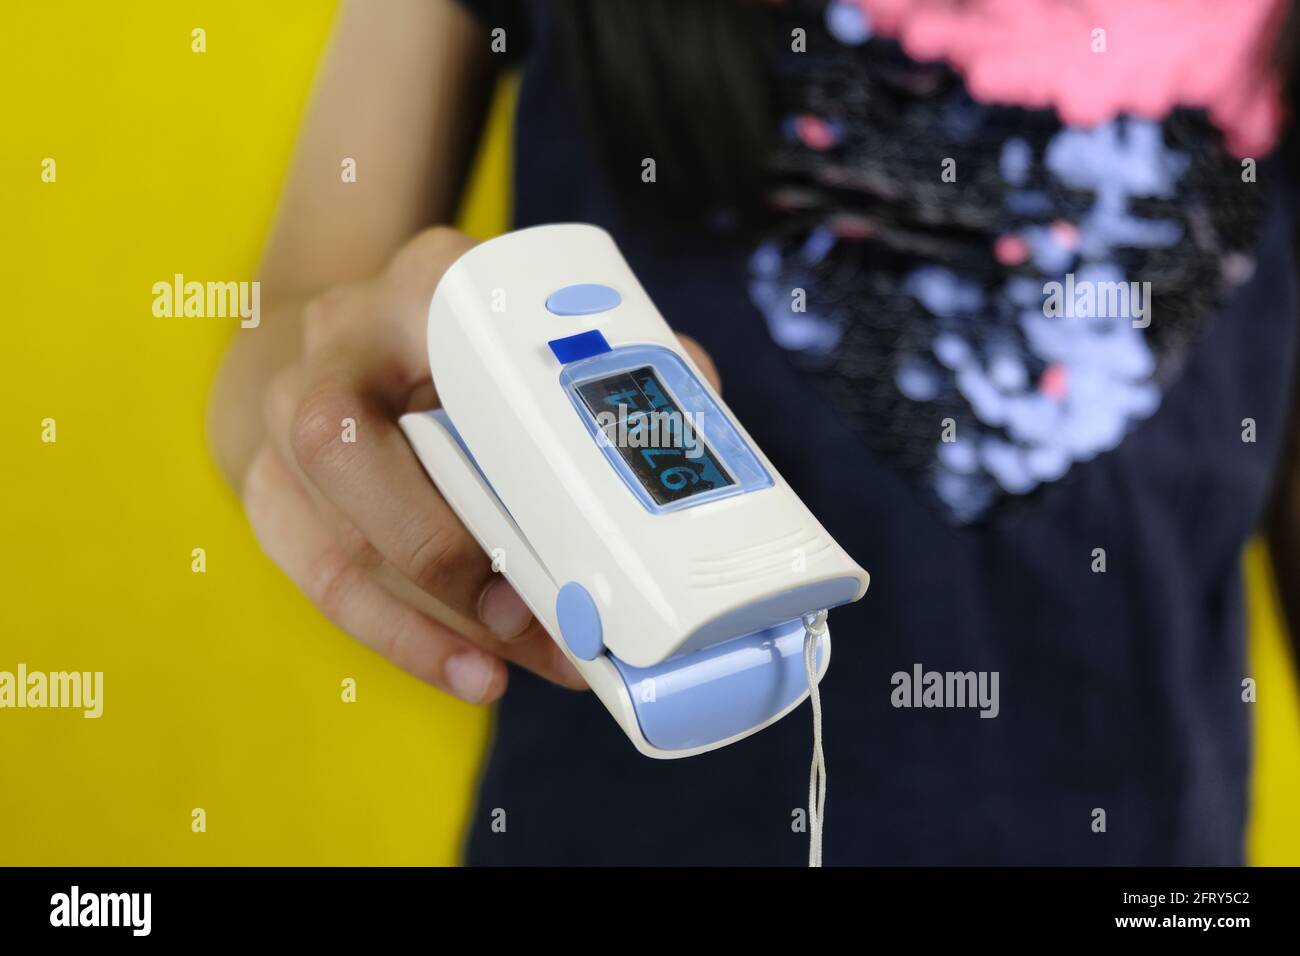 Ein Nahaufnahme Bild eines Mädchens, das ein digitales Bild einlegt Oximeter an der Fingerspitze, um den Sauerstoffgehalt in zu messen Ihr Blut, um auf mögliche Covid-19-Infe zu überprüfen Stockfoto